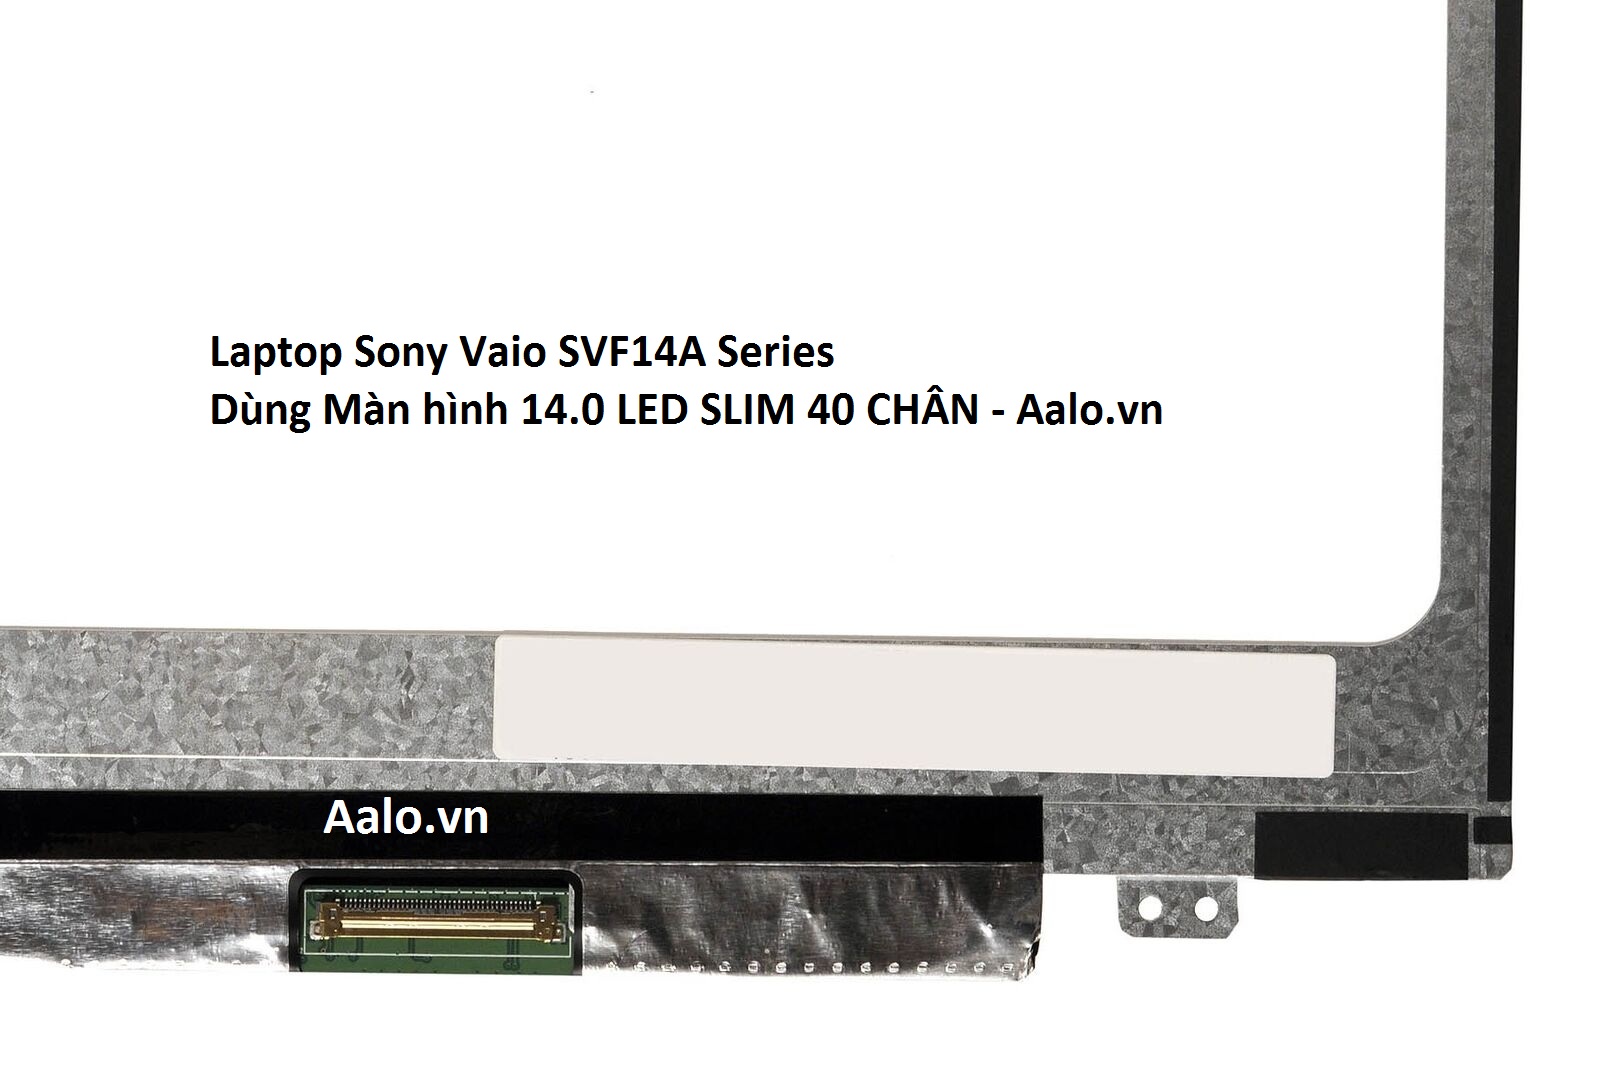 Màn hình Laptop Sony Vaio SVF14A Series - Aalo.vn